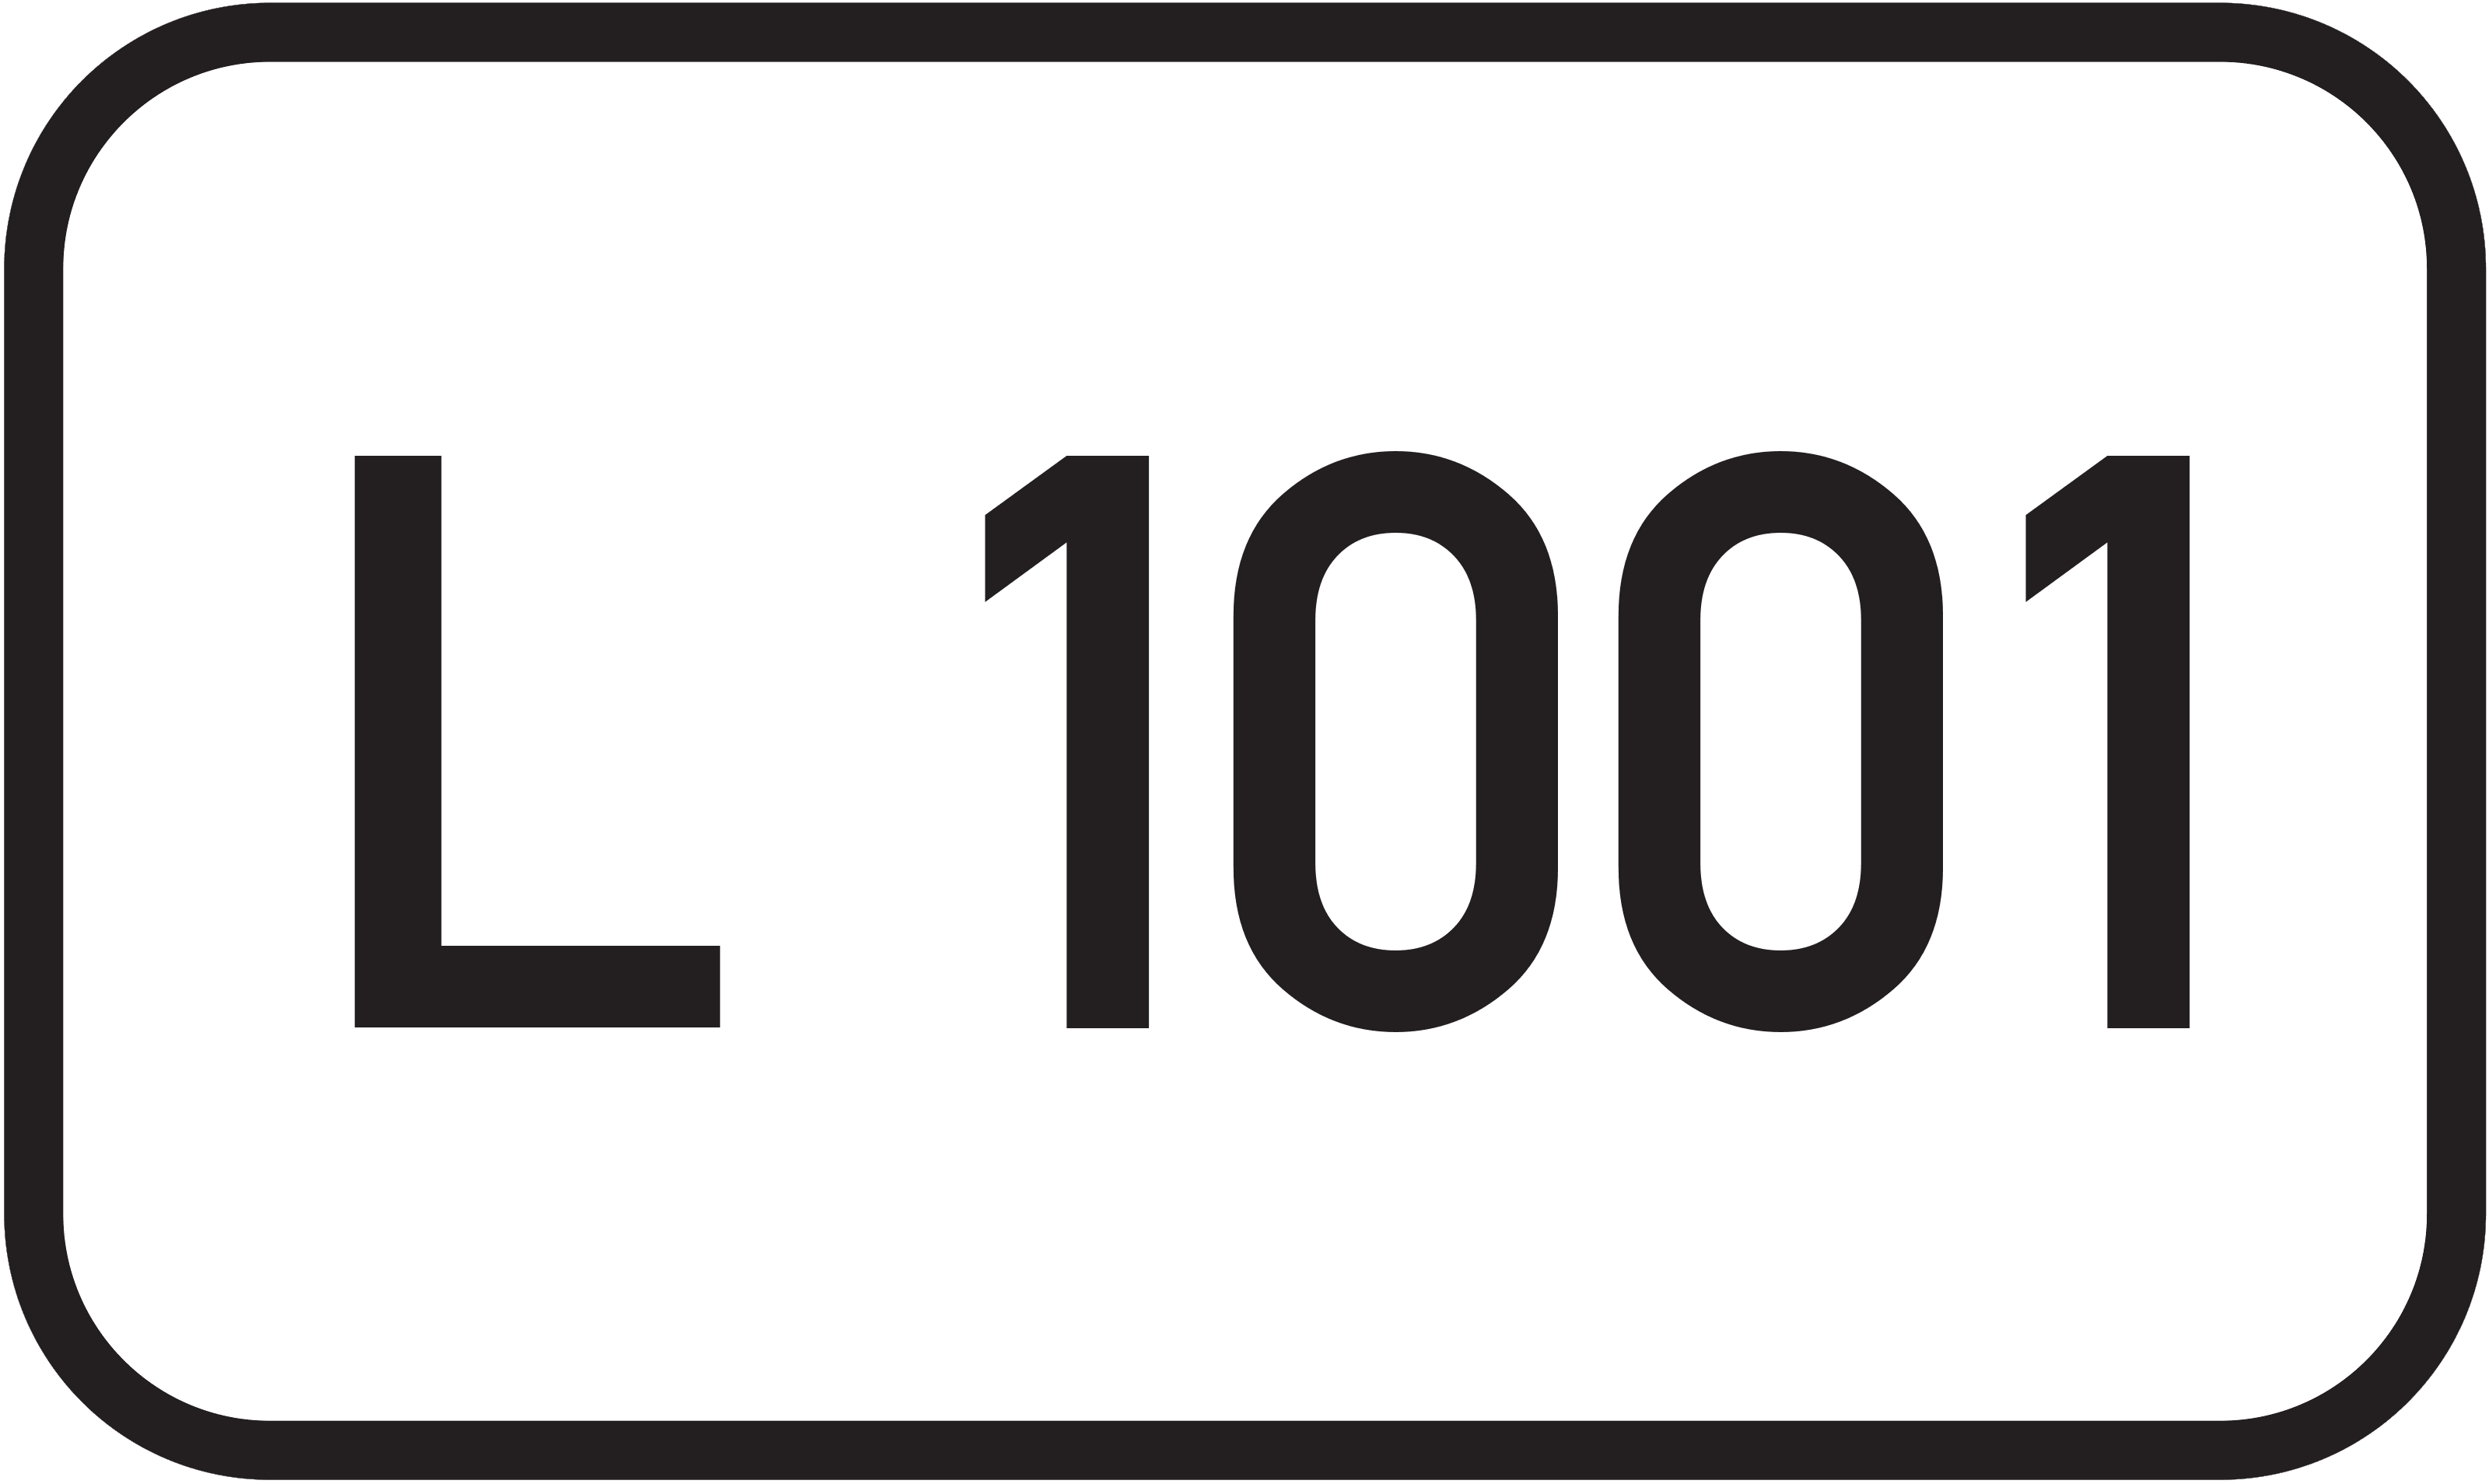 Landesstraße L 1001